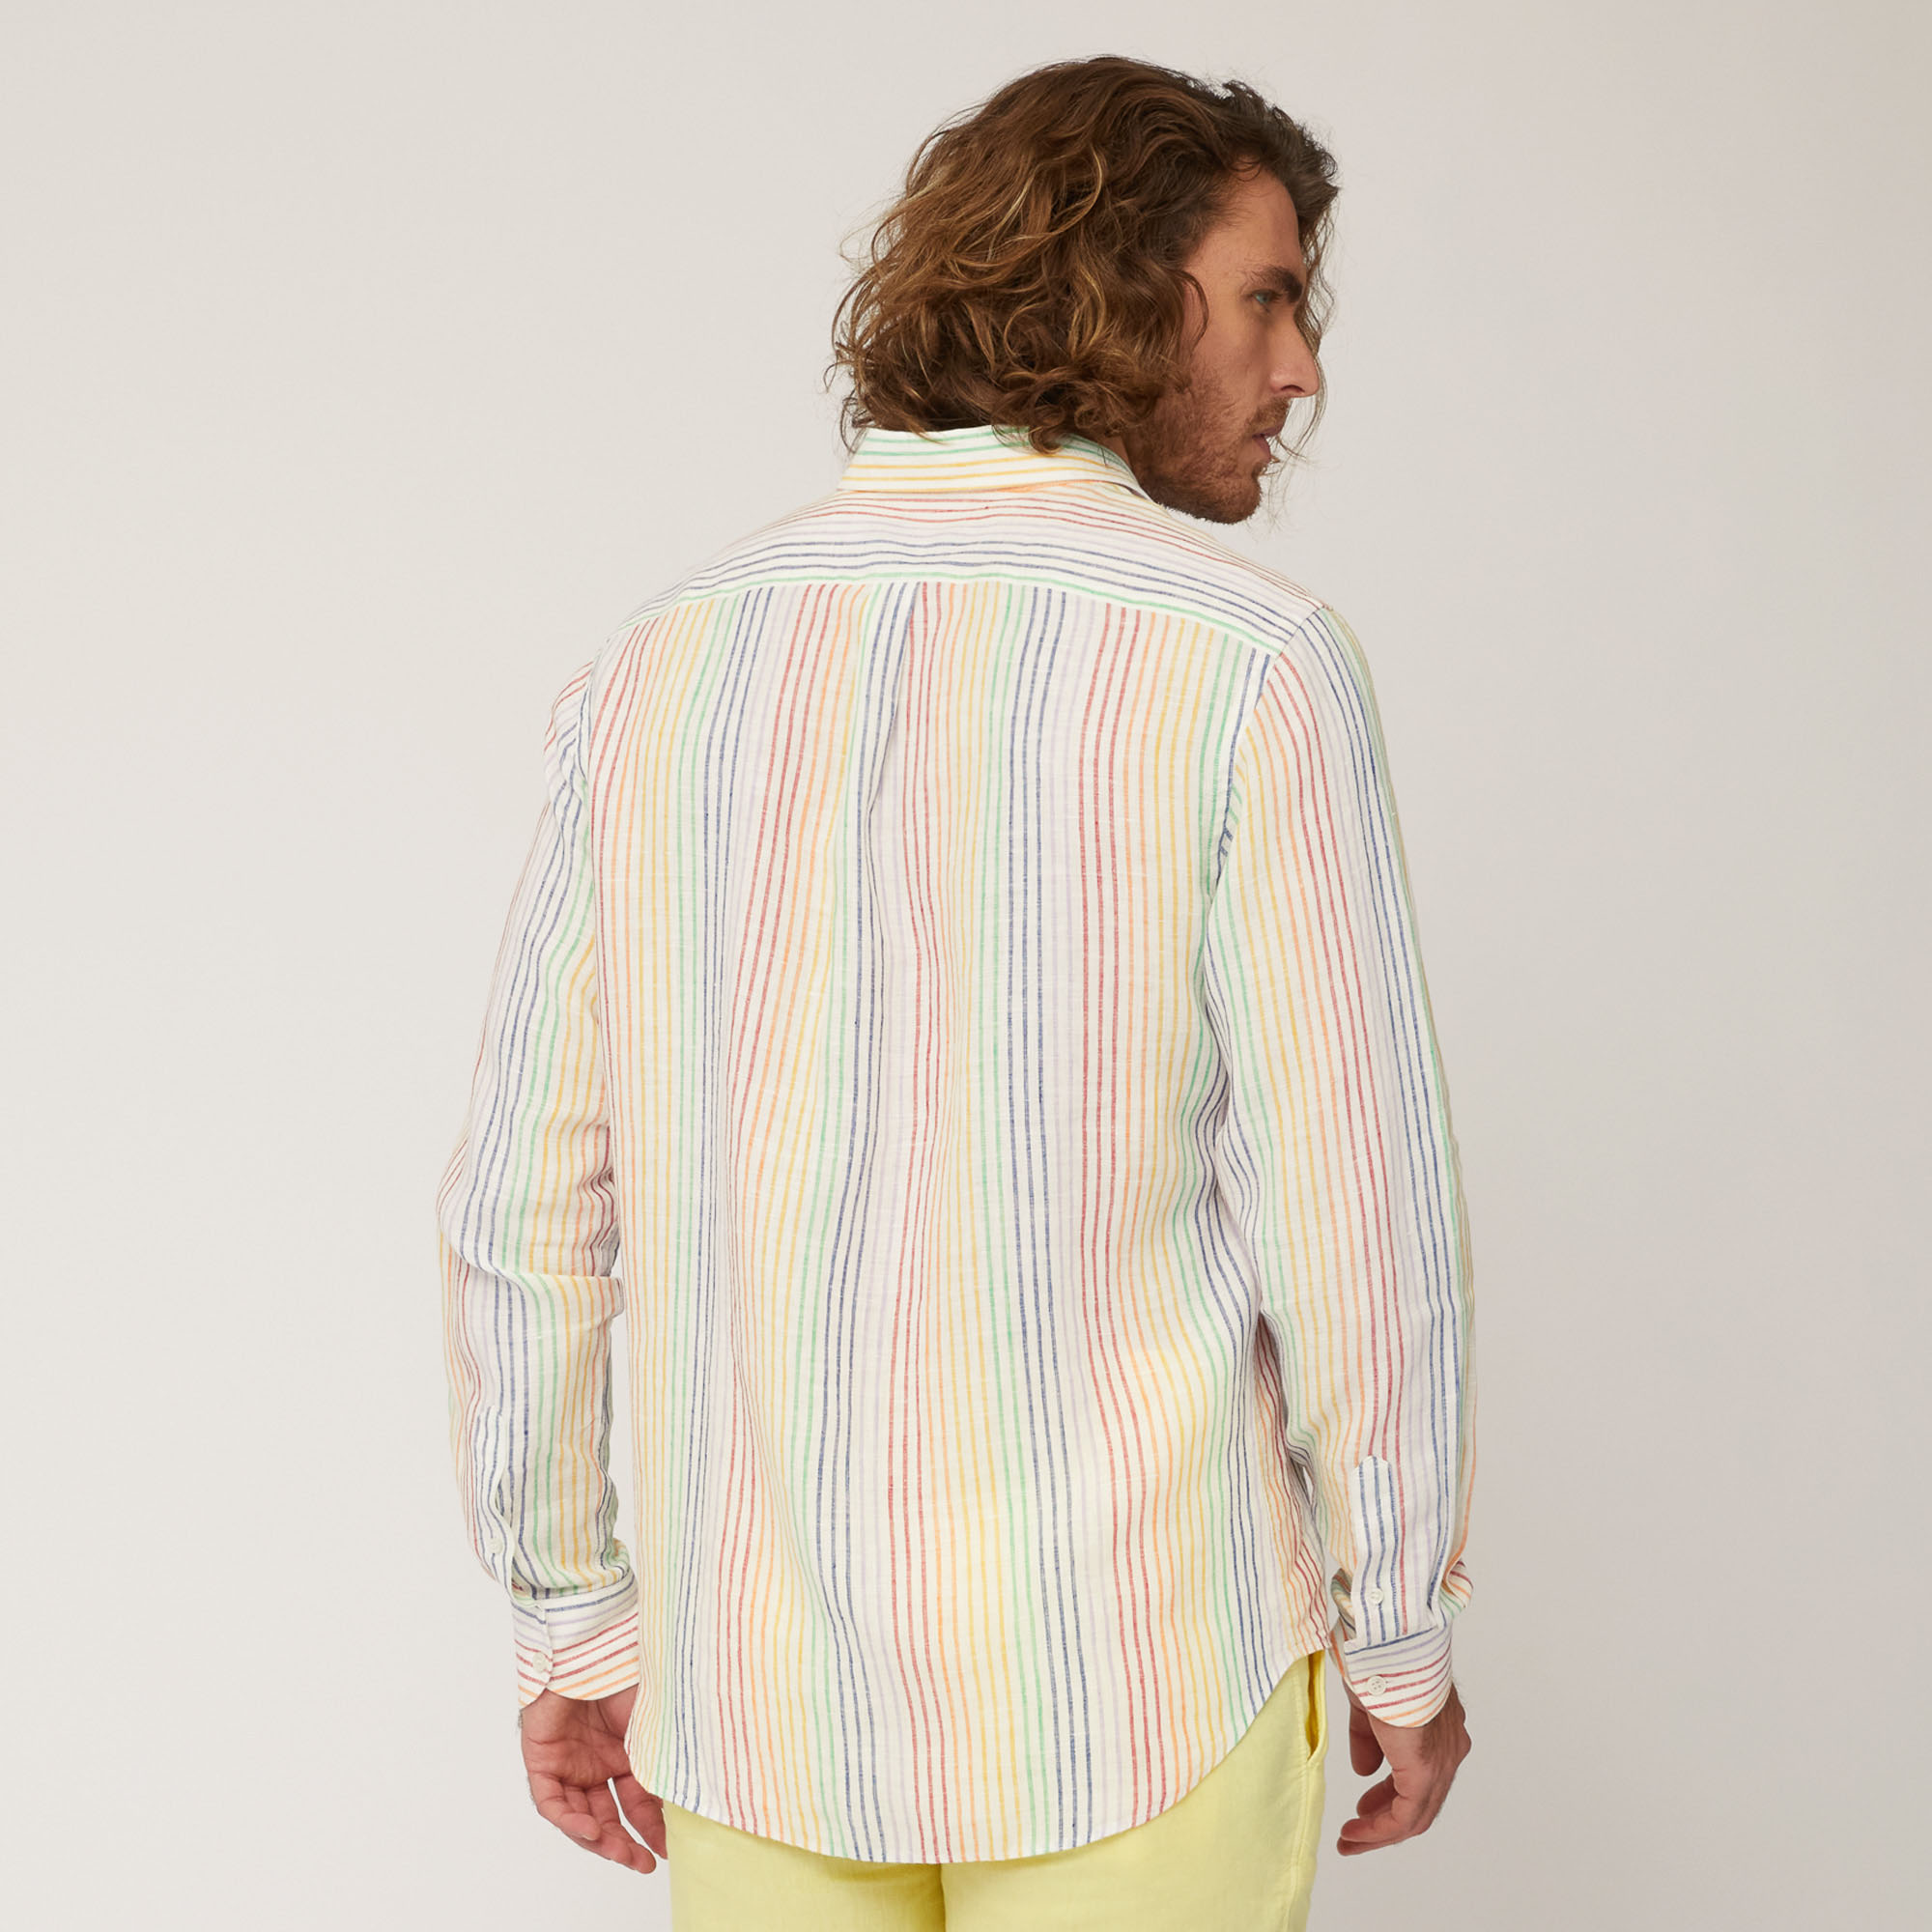 In Regenbogenfarben gestreiftes Leinenhemd, Weiß, large image number 1